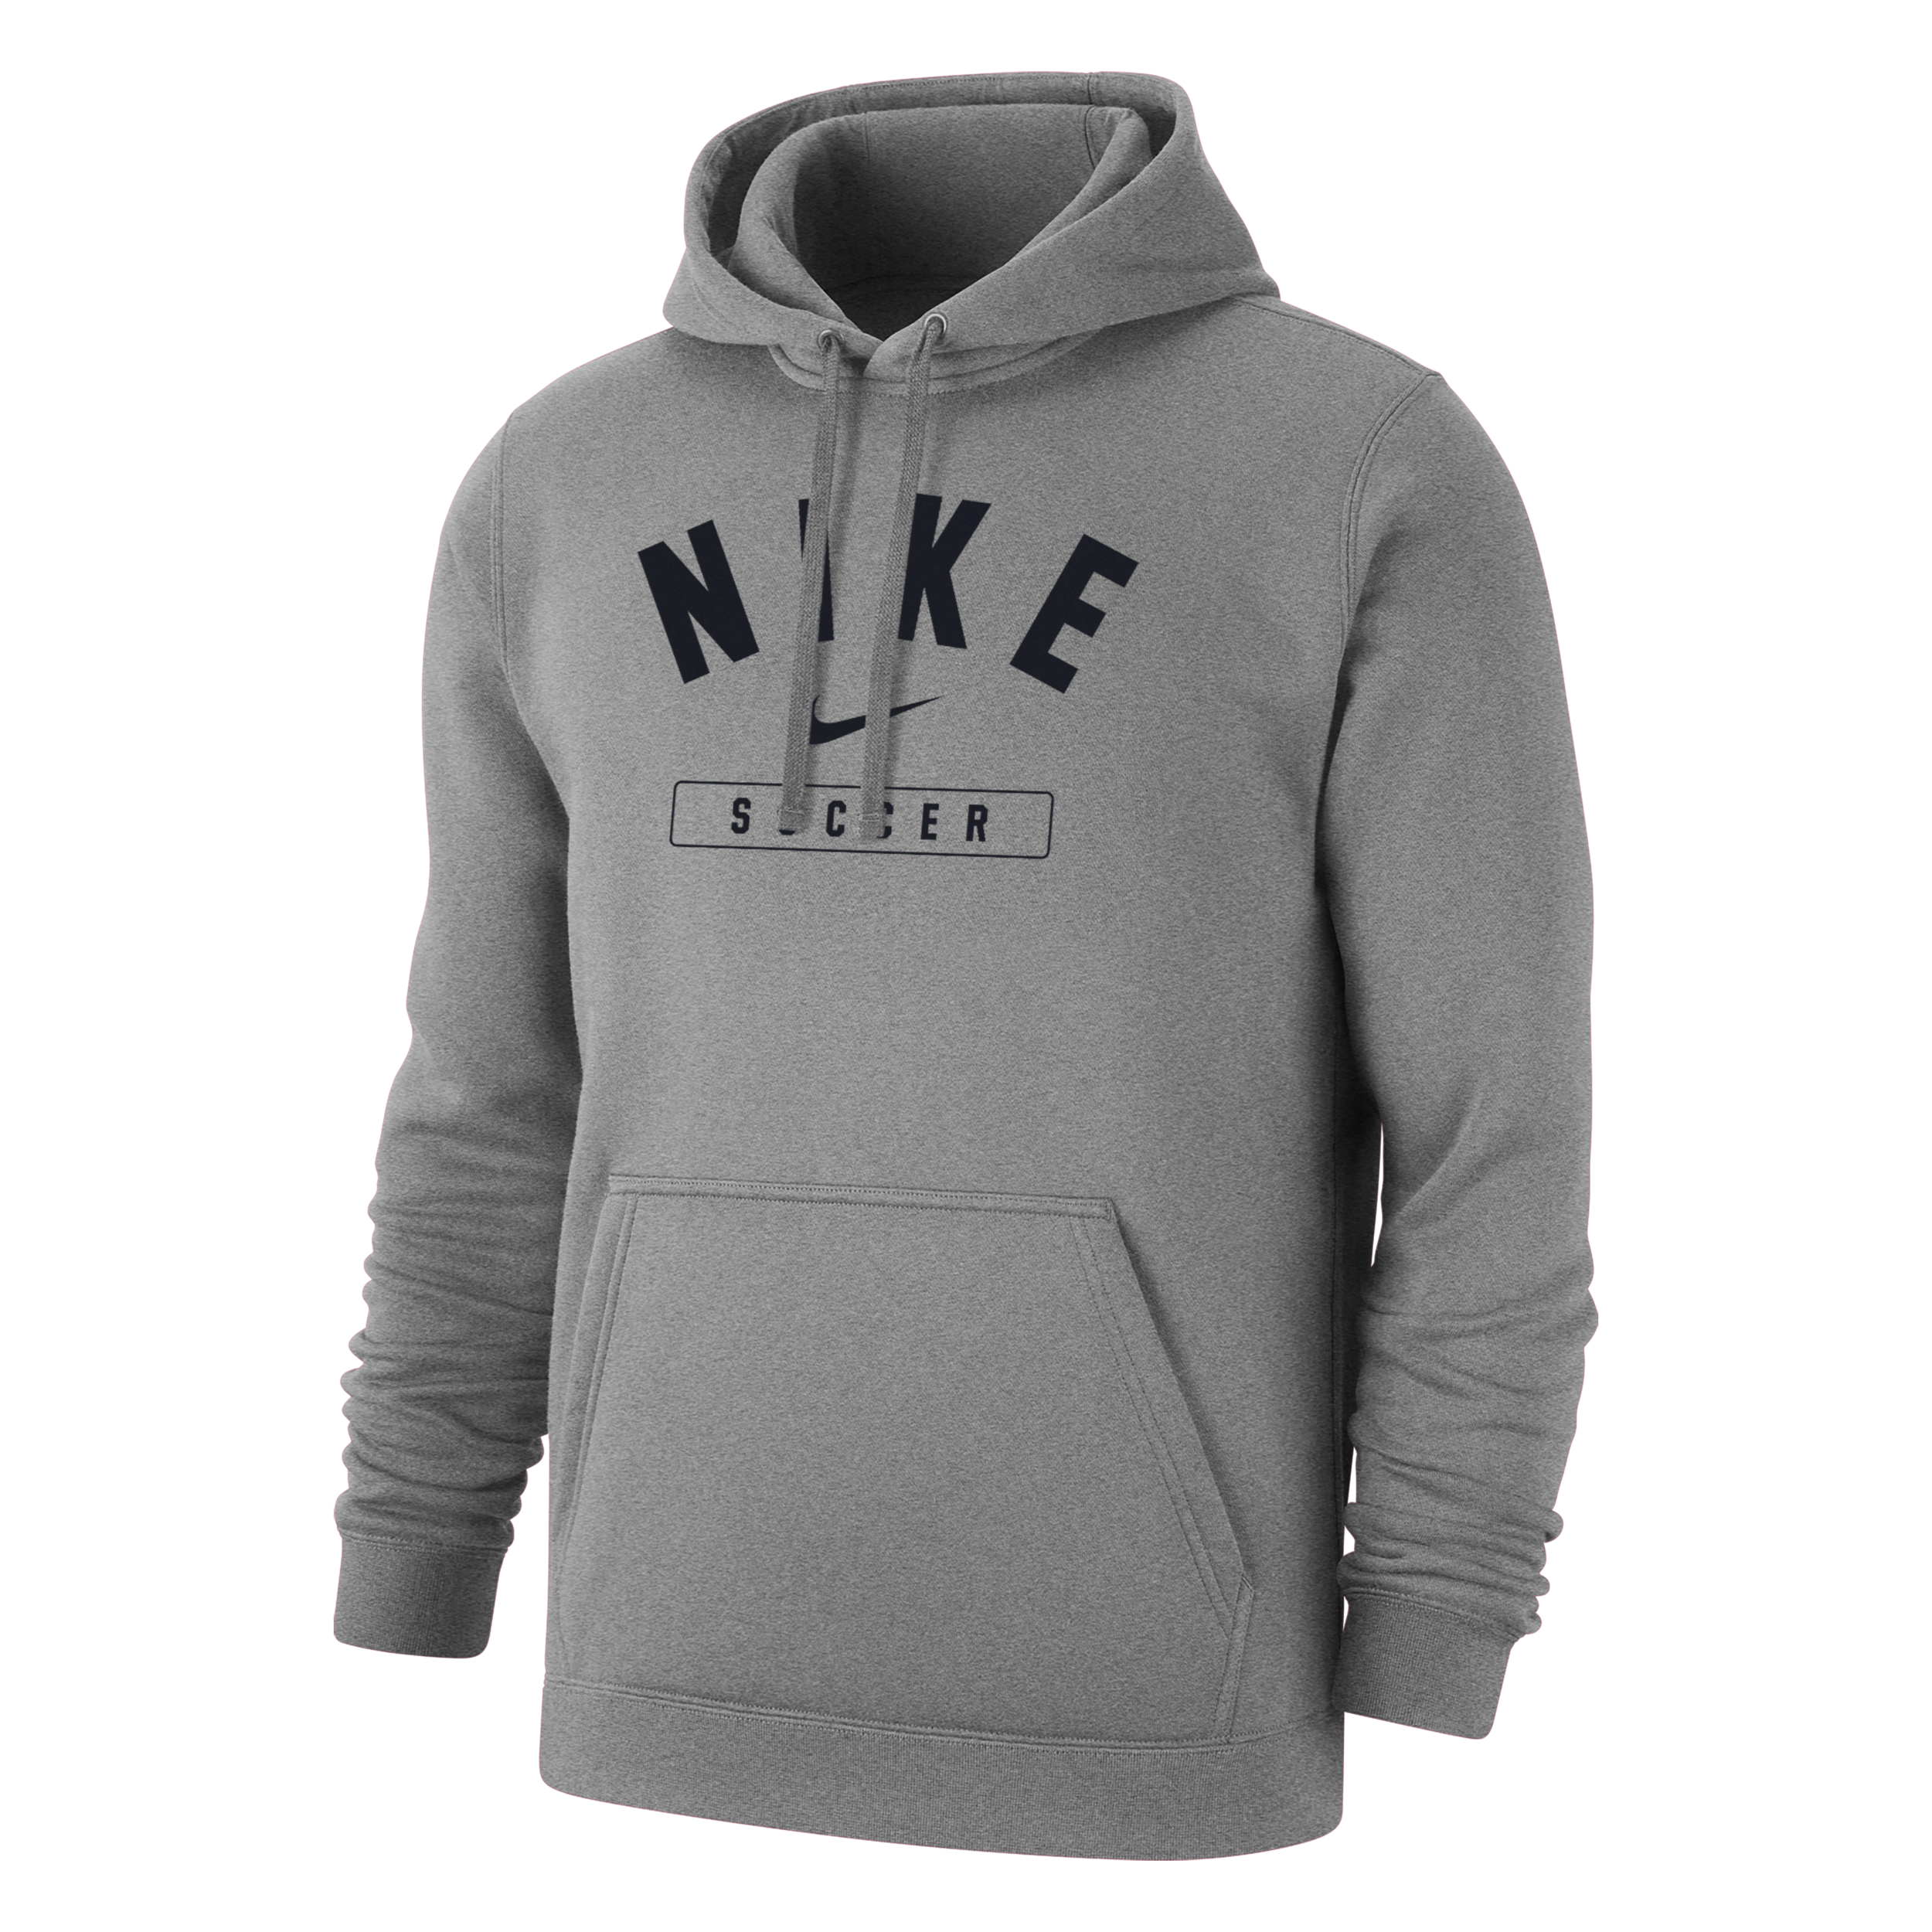 Nike Men's Soccer Pullover Hoodie In Grey